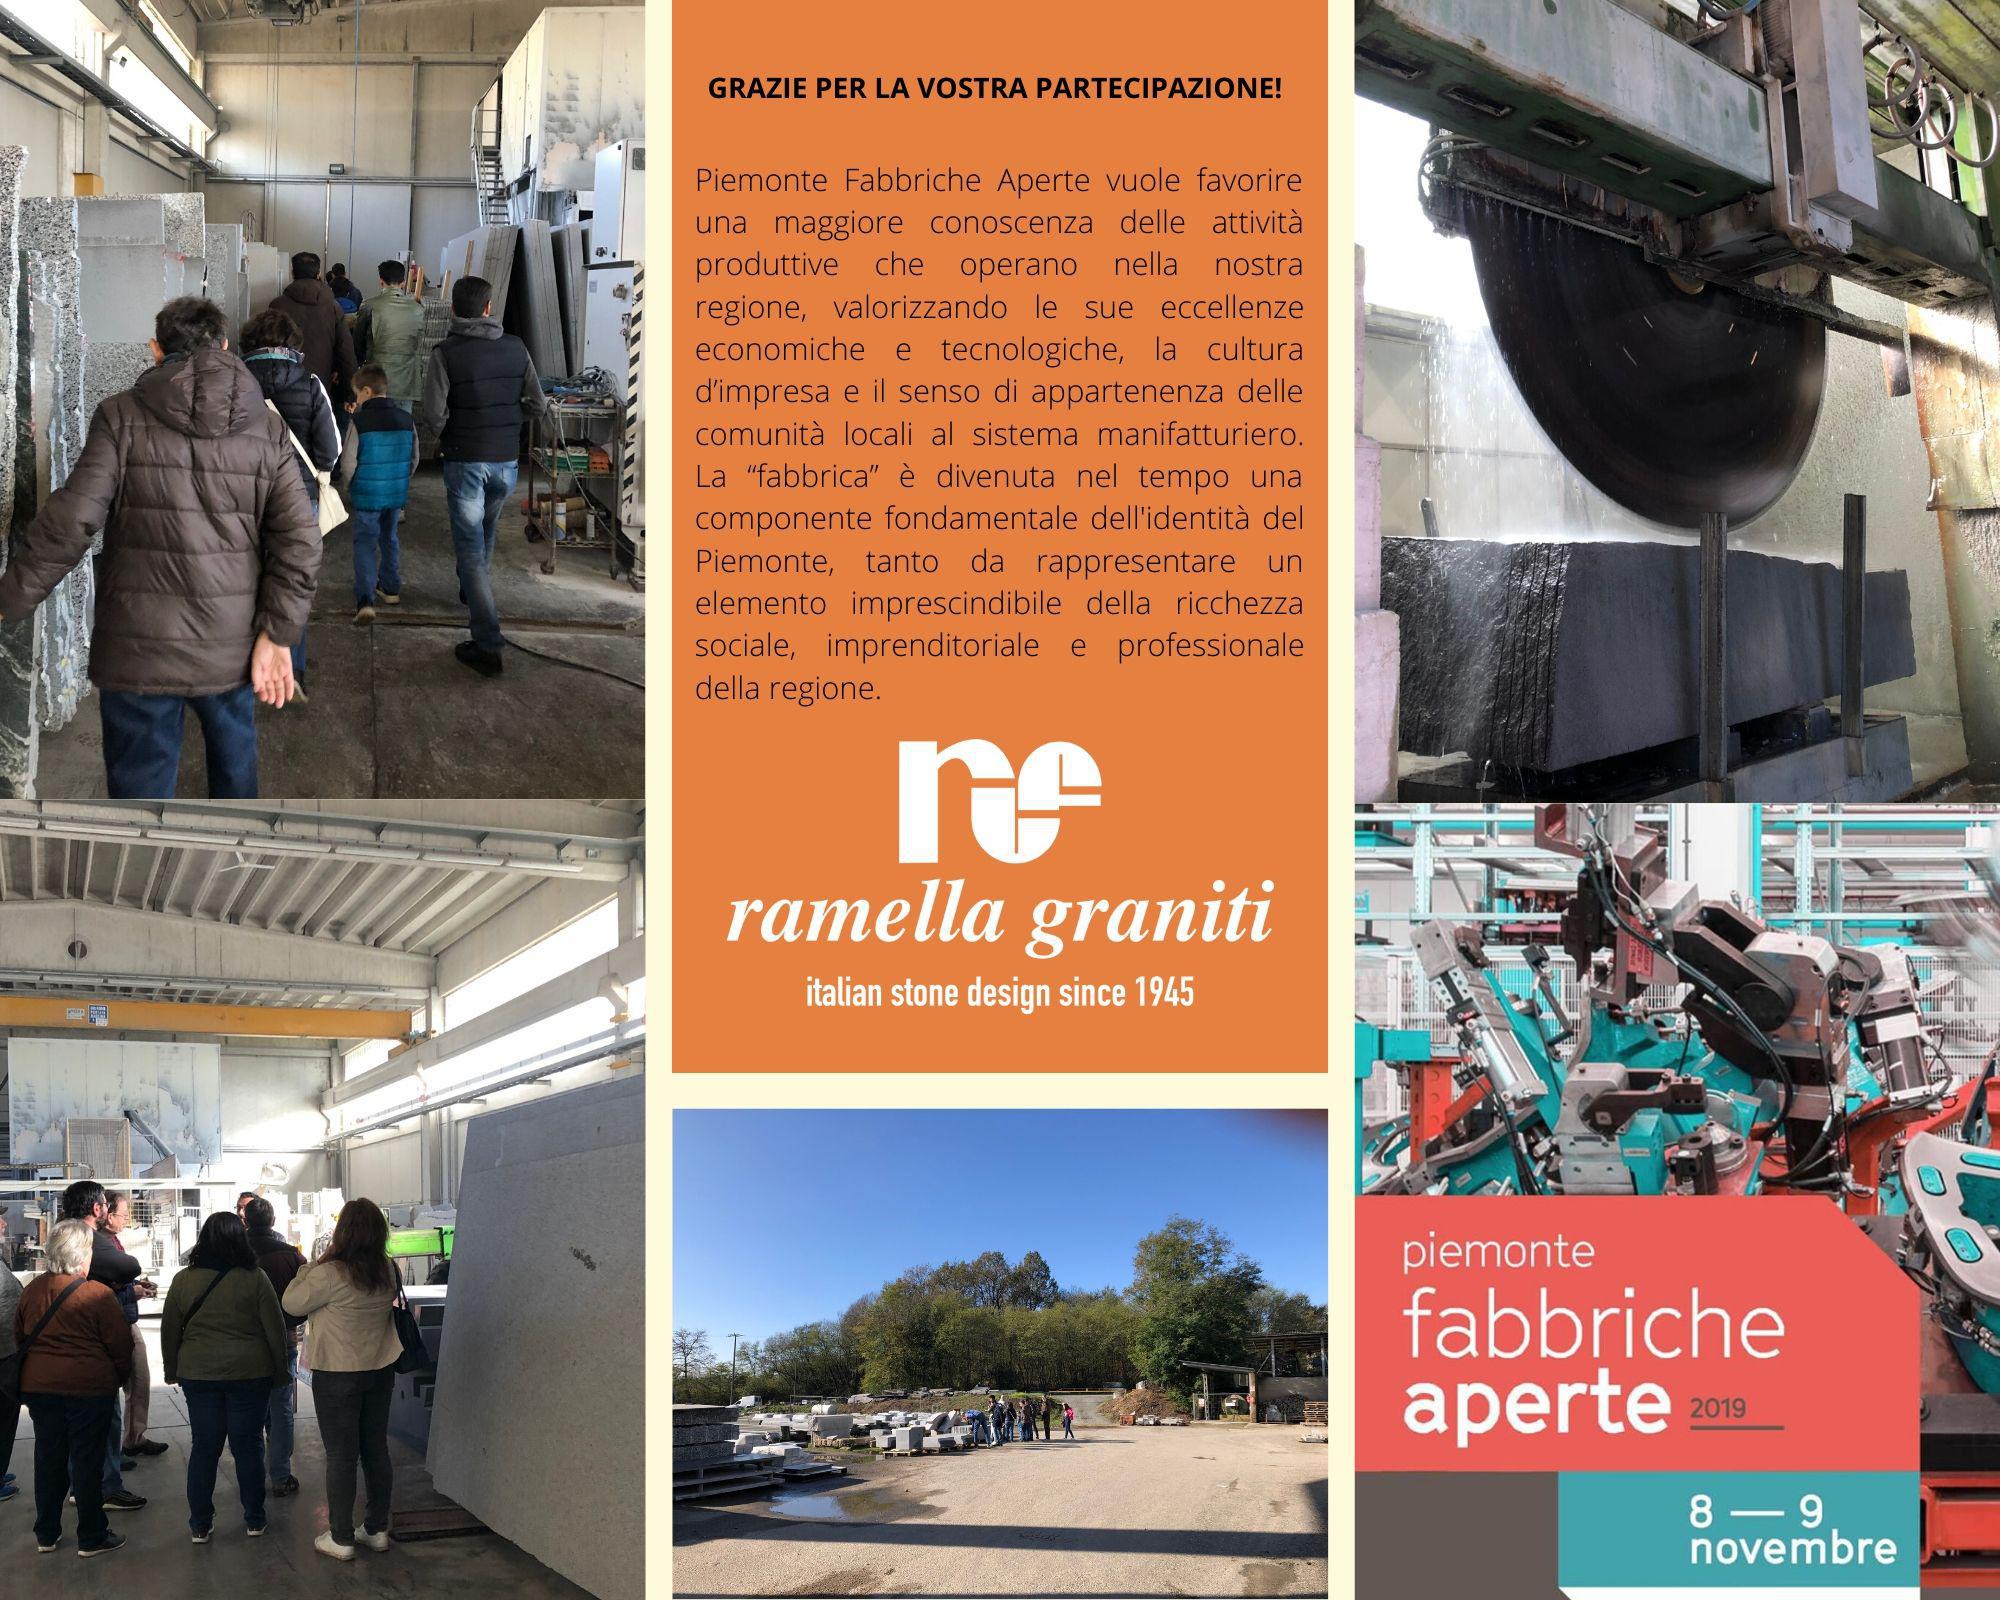 Ramella Graniti Piemonte Fabbriche Aperte 2019